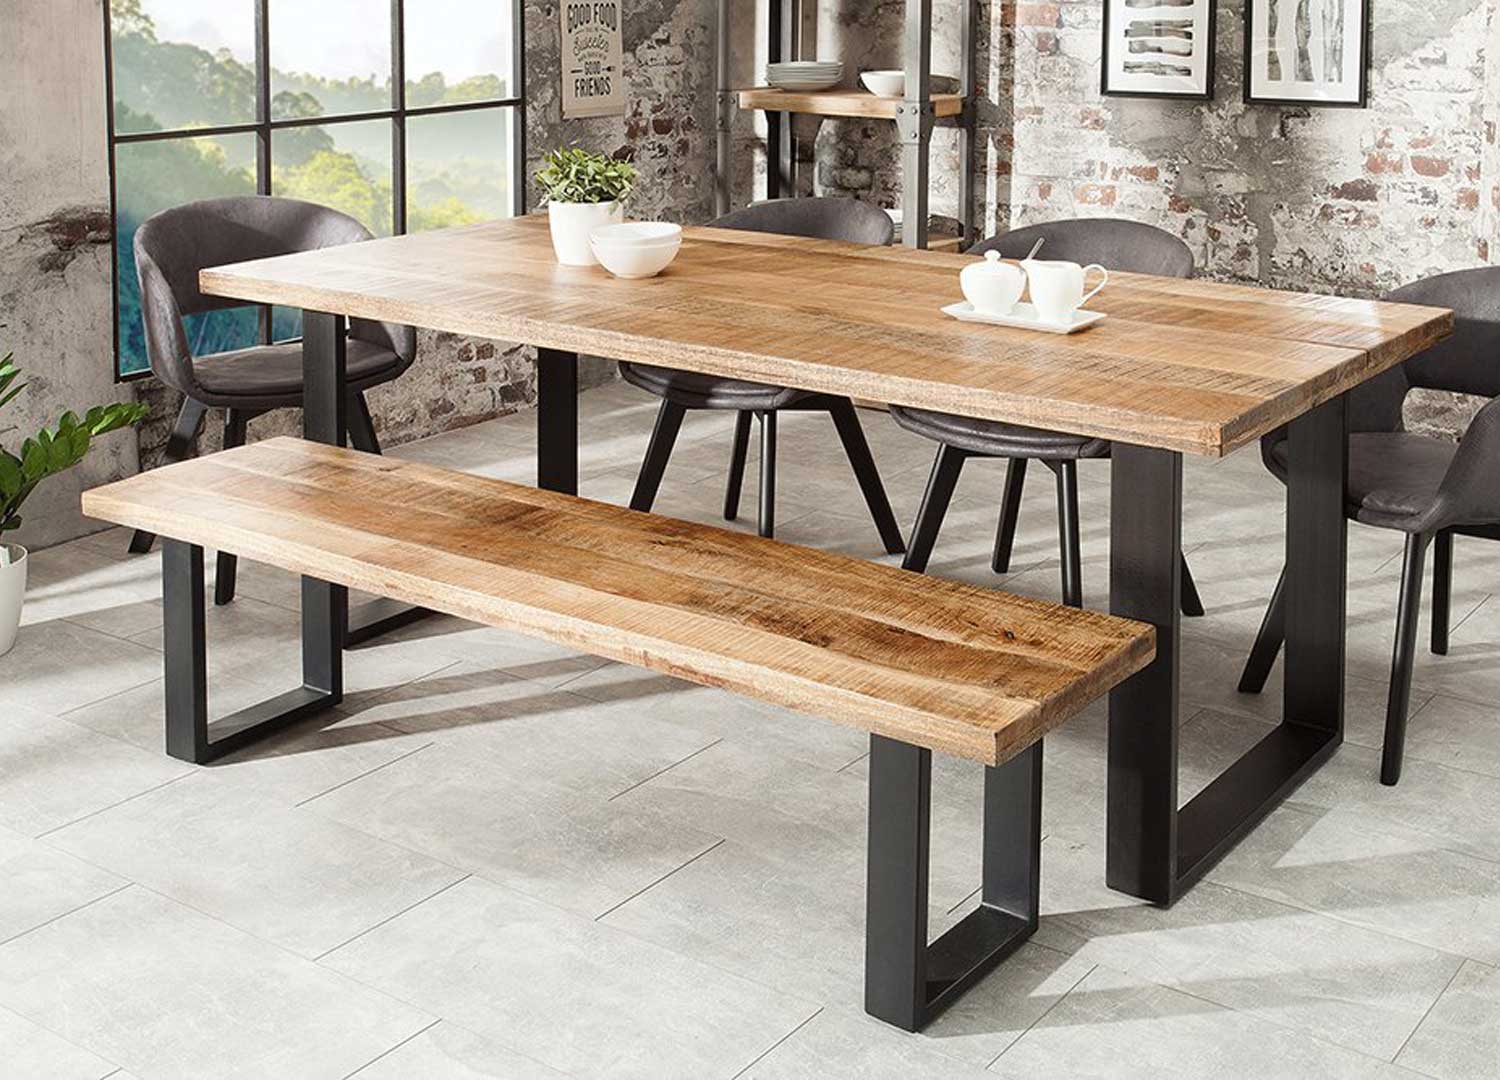 Table de salle à manger en bois massif - pieds bois et acier noir